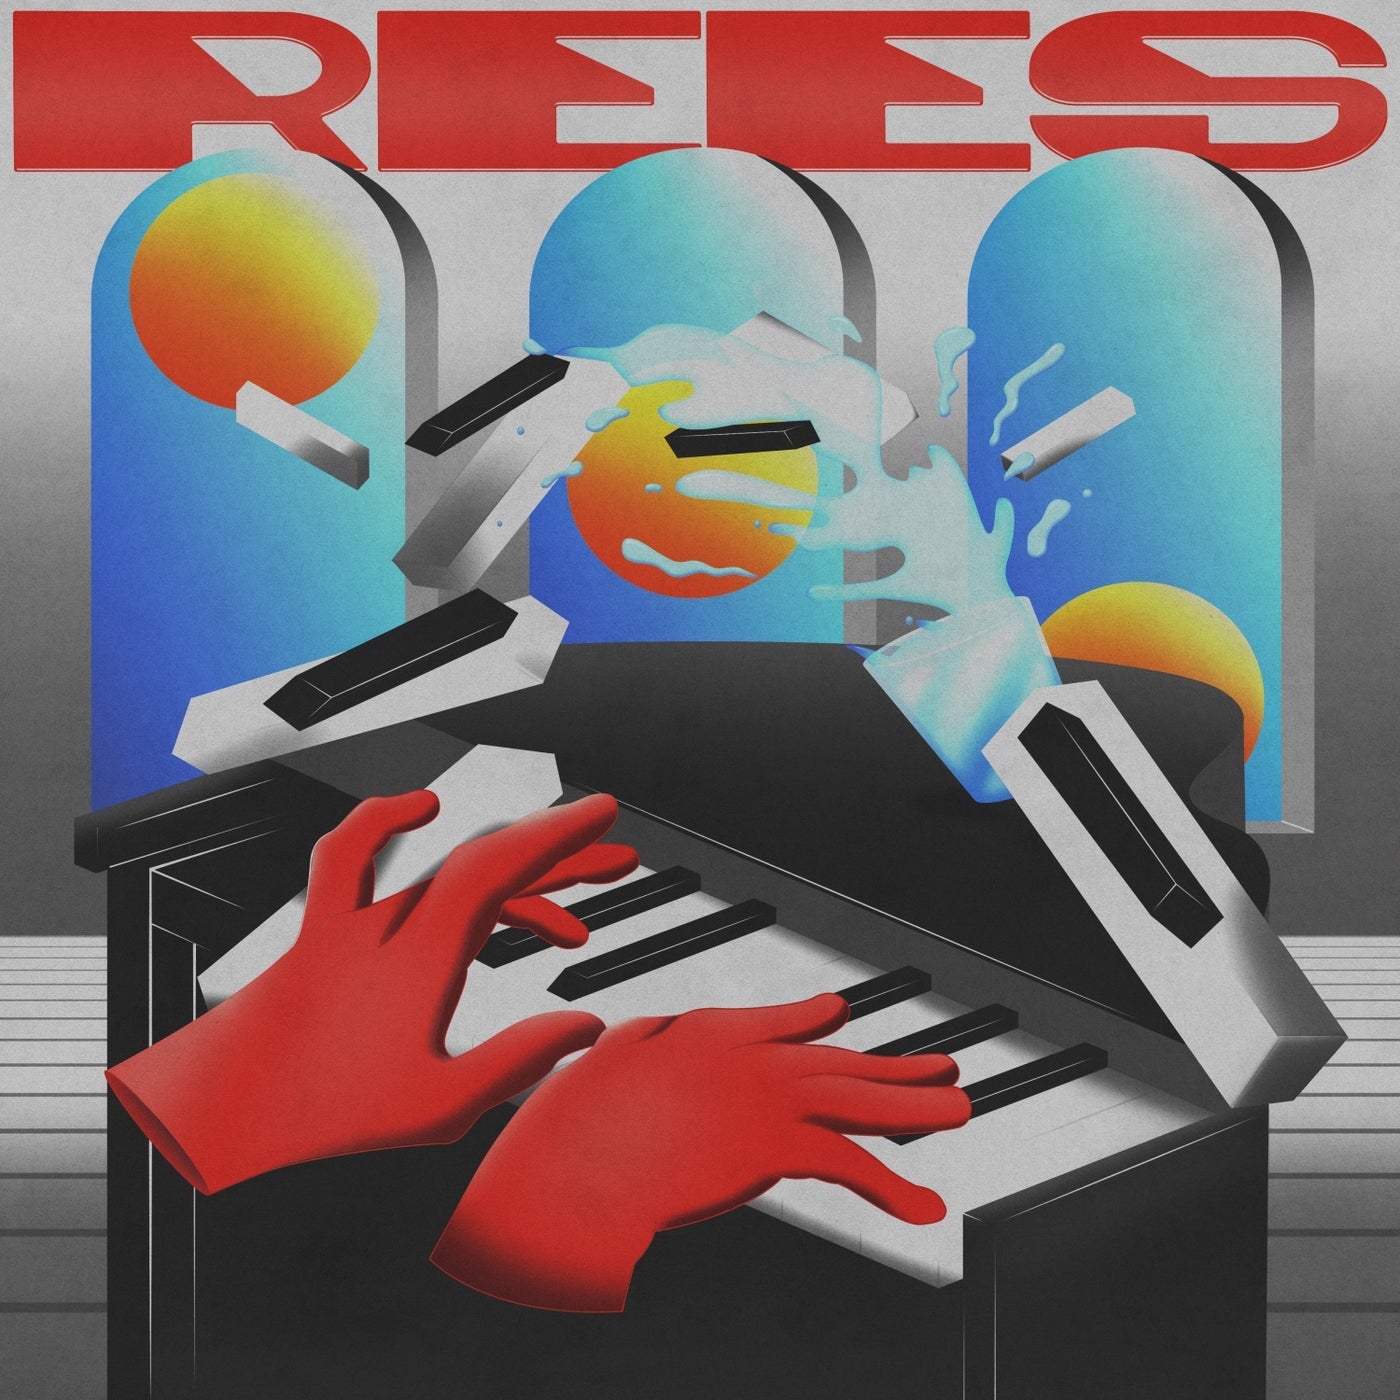 Rees – Romanticism [SNFDIGI 005]